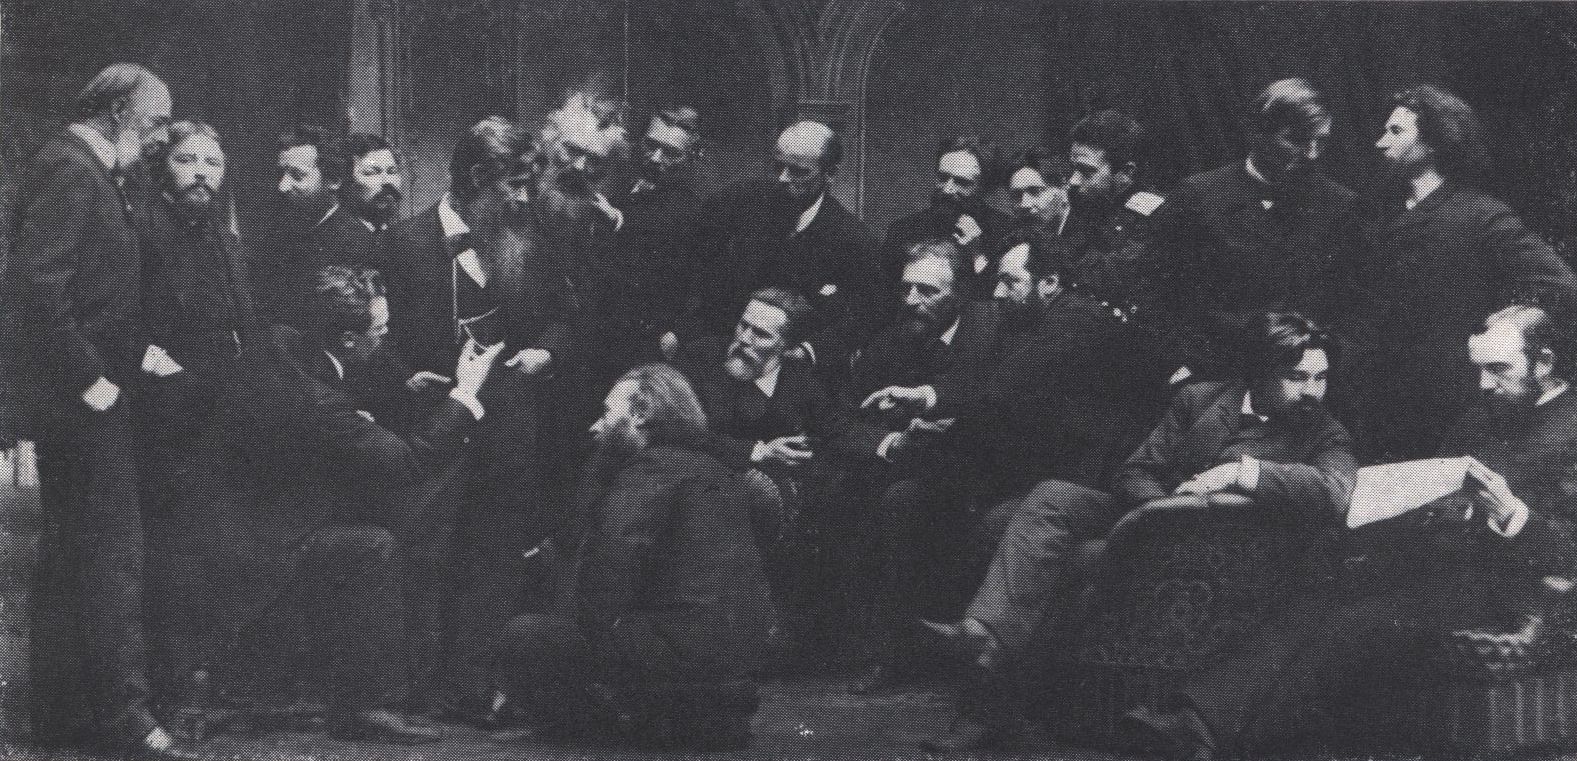 Группа членов Товарищества передвижных художественных выставок. 1880-е гг. Фотография